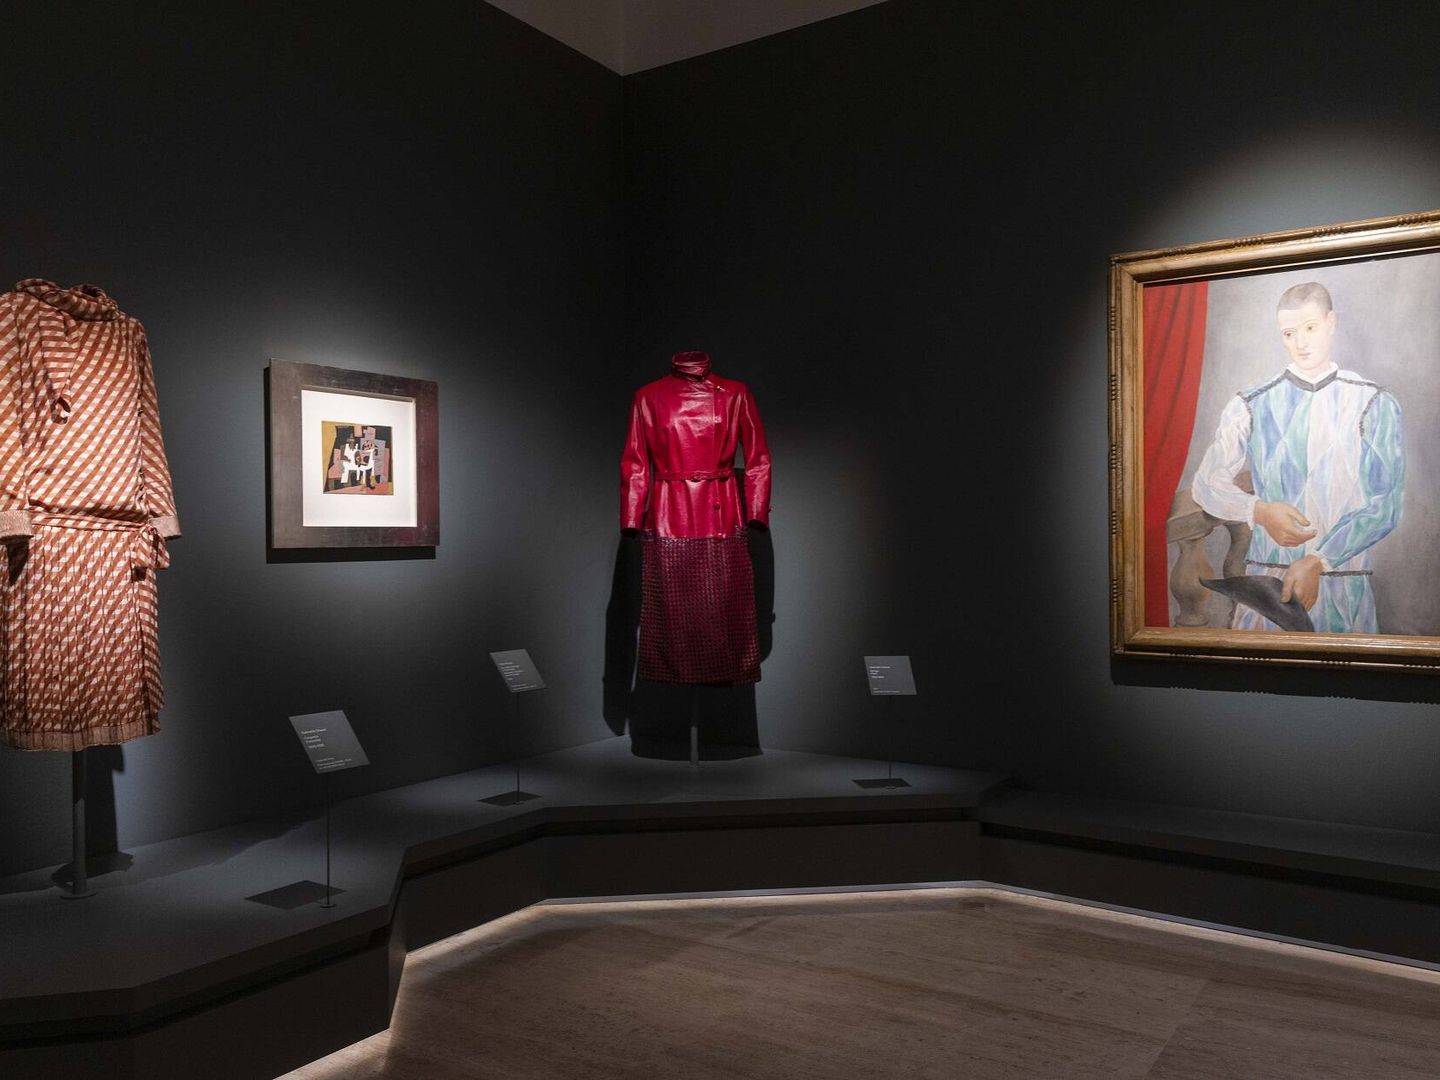 Detalle de la exposición con los vestidos de Chanel y el 'Arlequín' de Picasso. (Museo Thyssen)